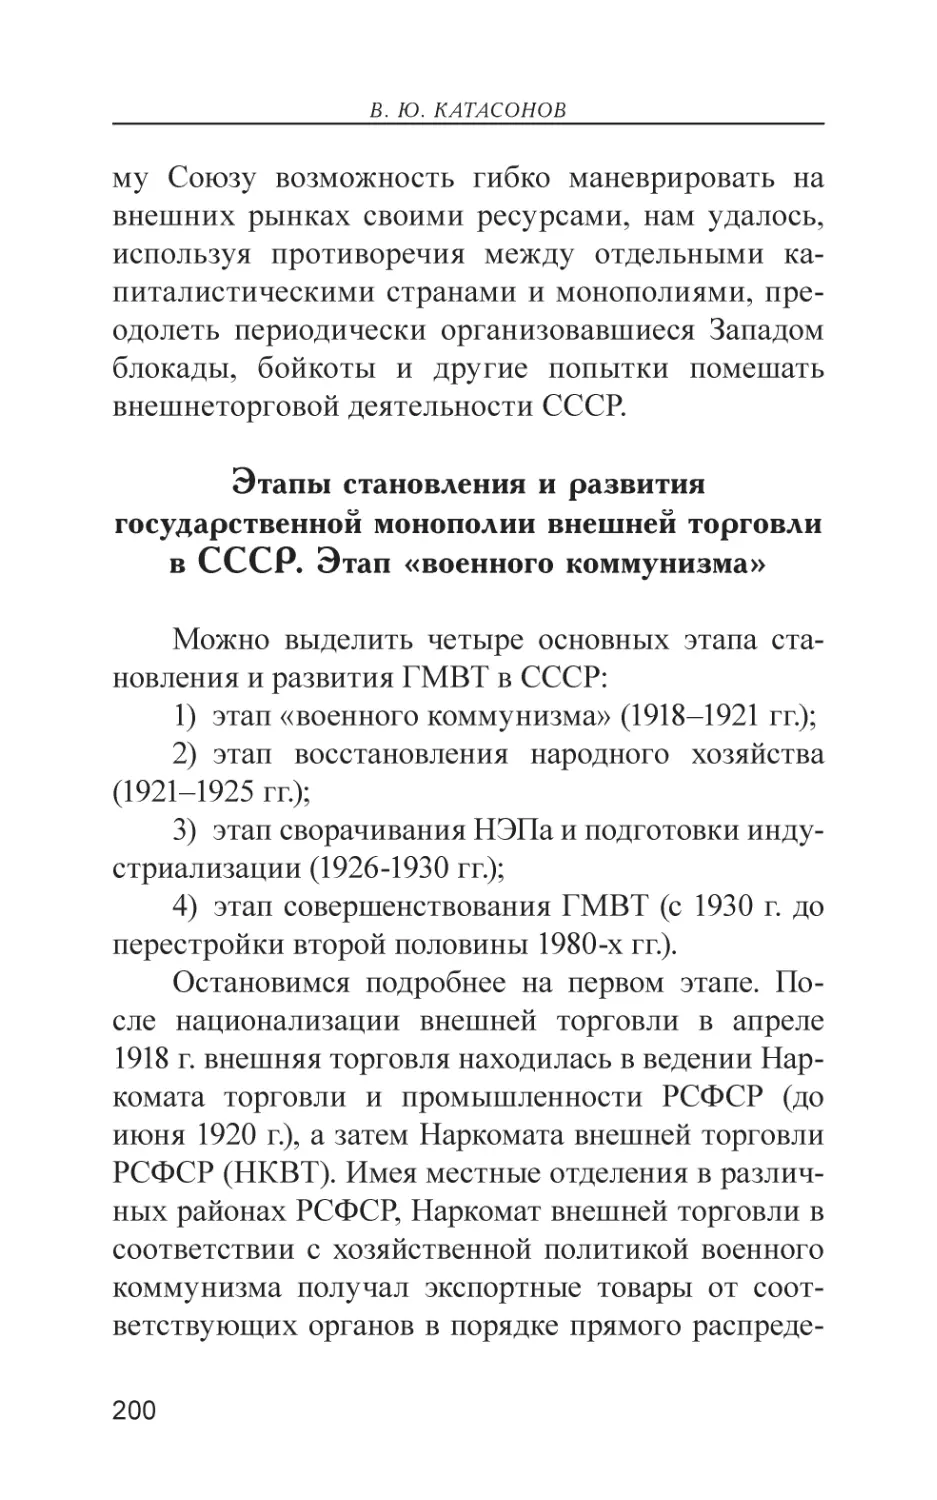 Этапы становления и развития государственной монополии внешней торговли в СССР. Этап «военного коммунизма»